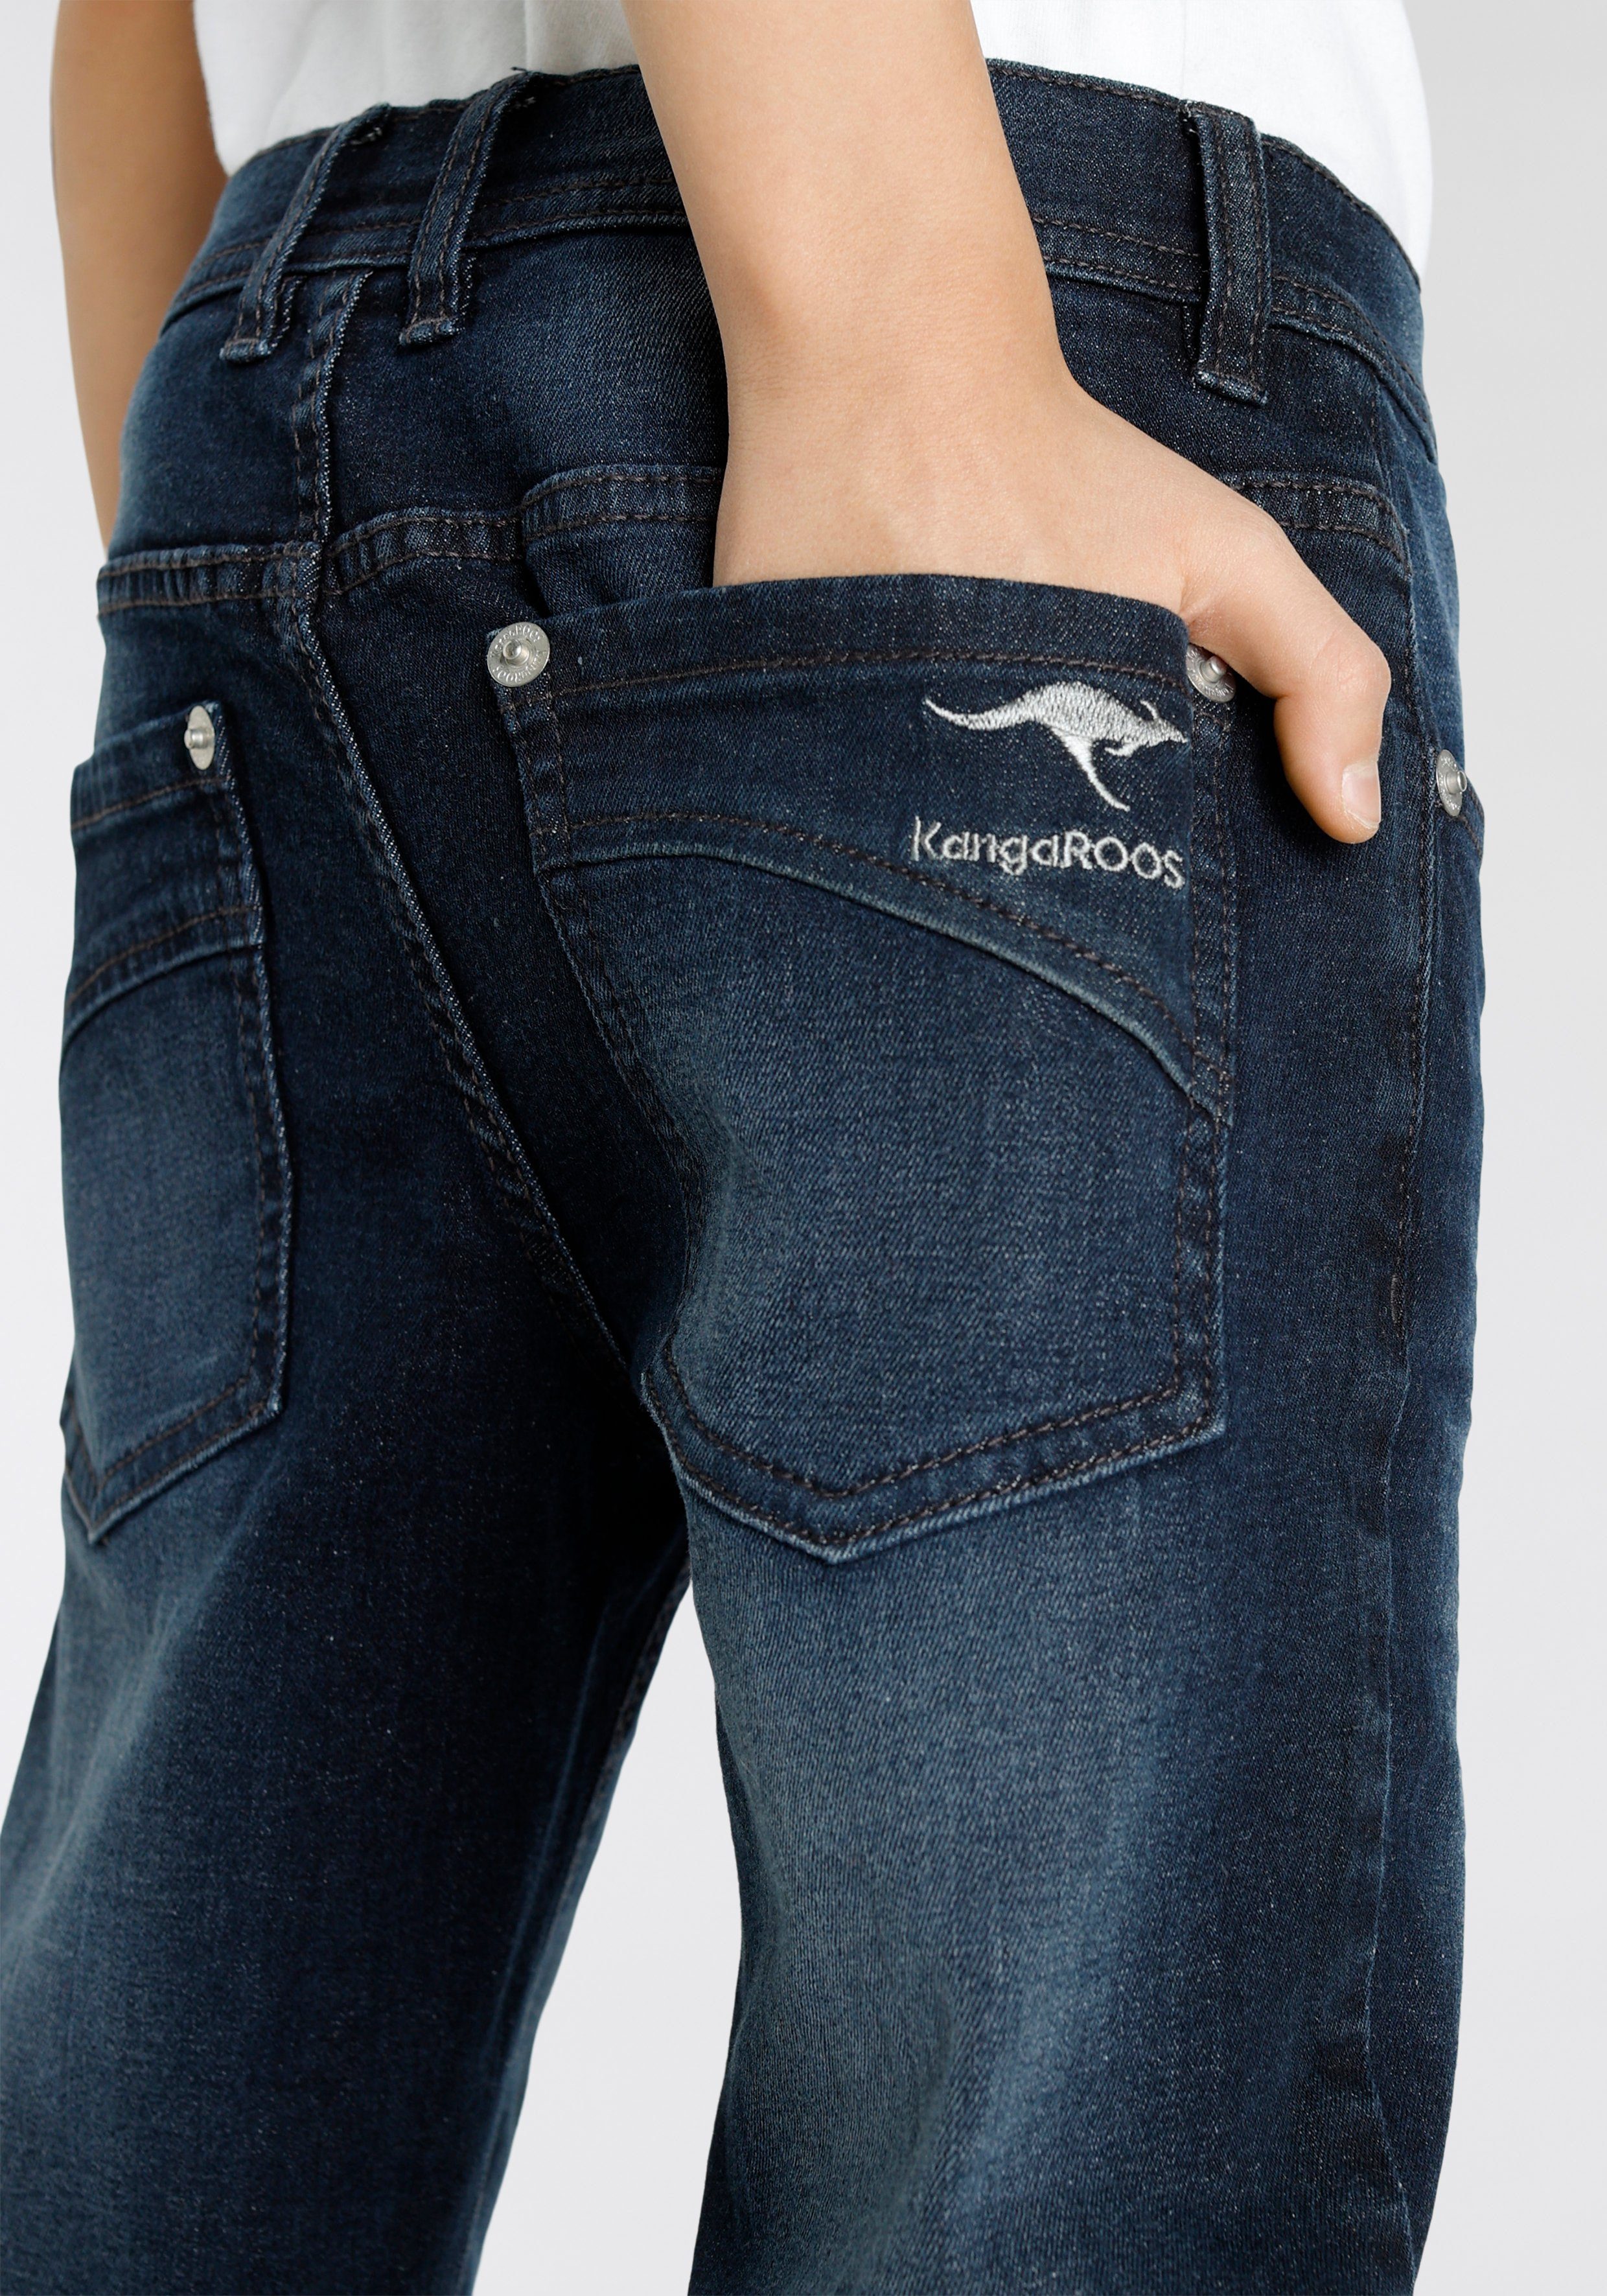 KangaROOS Stretch-Jeans, regular fit geradem mit Beinverlauf